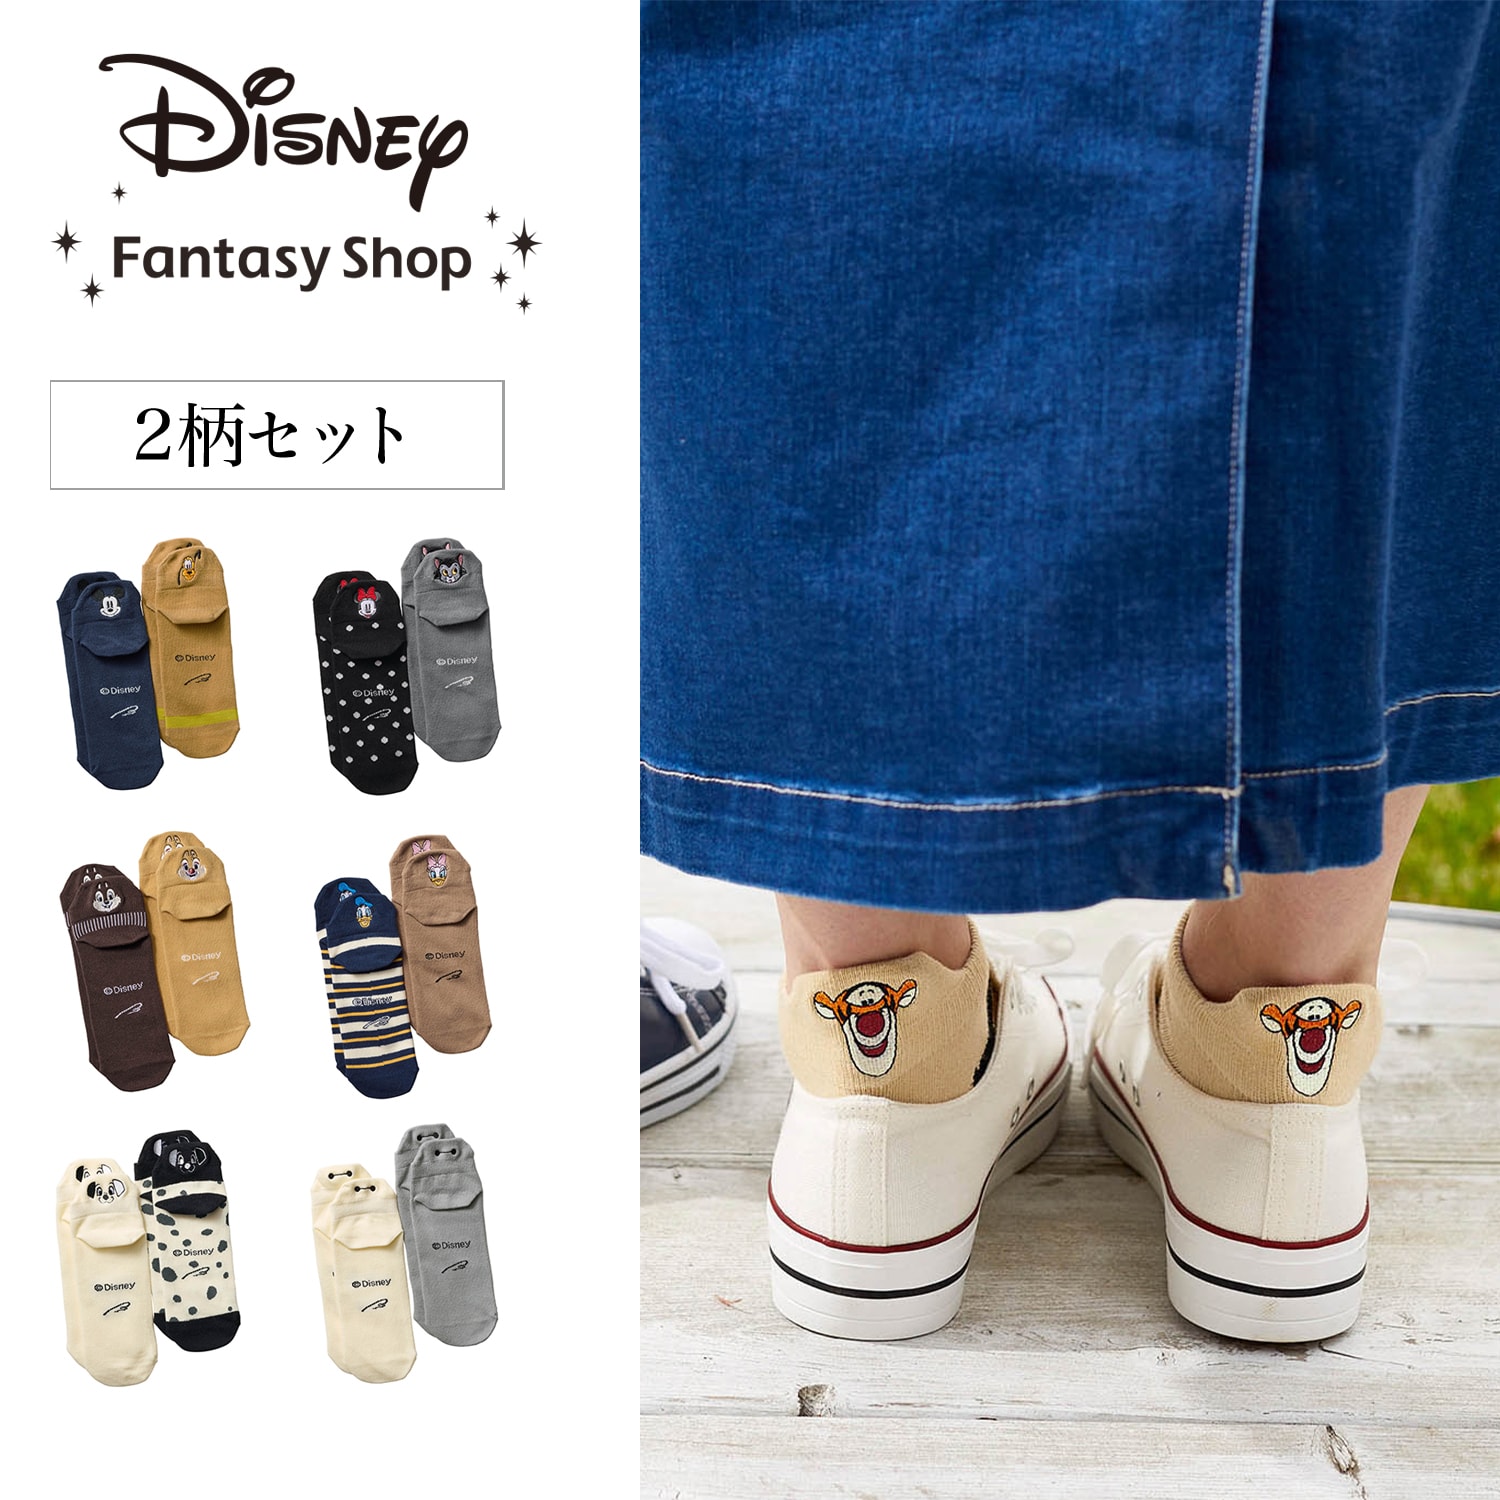 【ディズニー/Disney】ちびかお靴下2柄セット(選べるキャラクター)